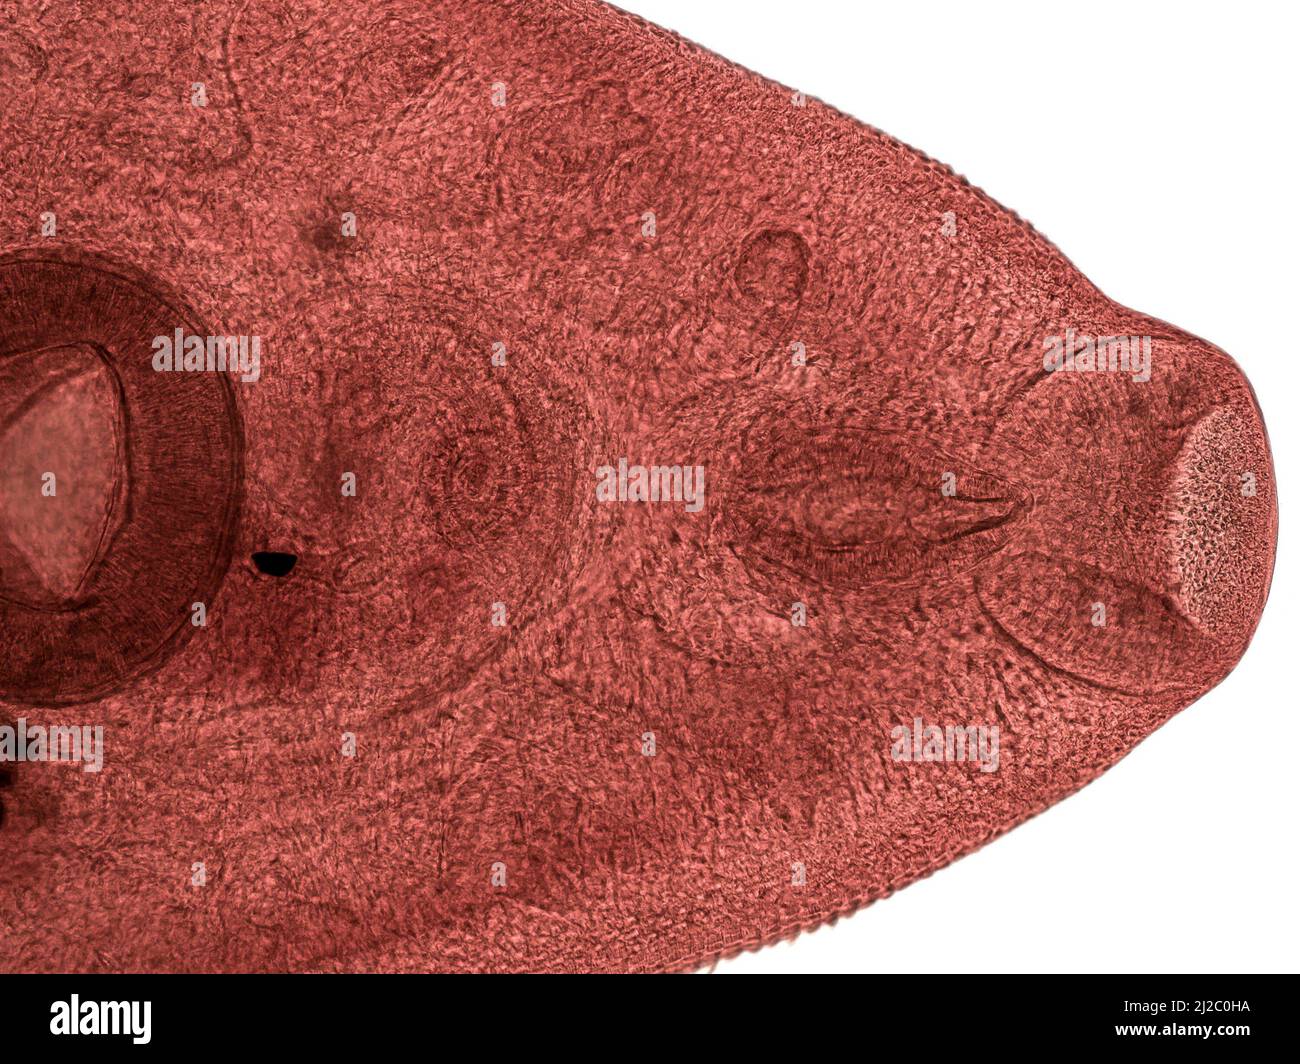 Parasitäre Plattwürmer beim Menschen. leberegel (Fasciola hepatica) im Erwachsenenstadium im Lichtmikroskop. Stockfoto